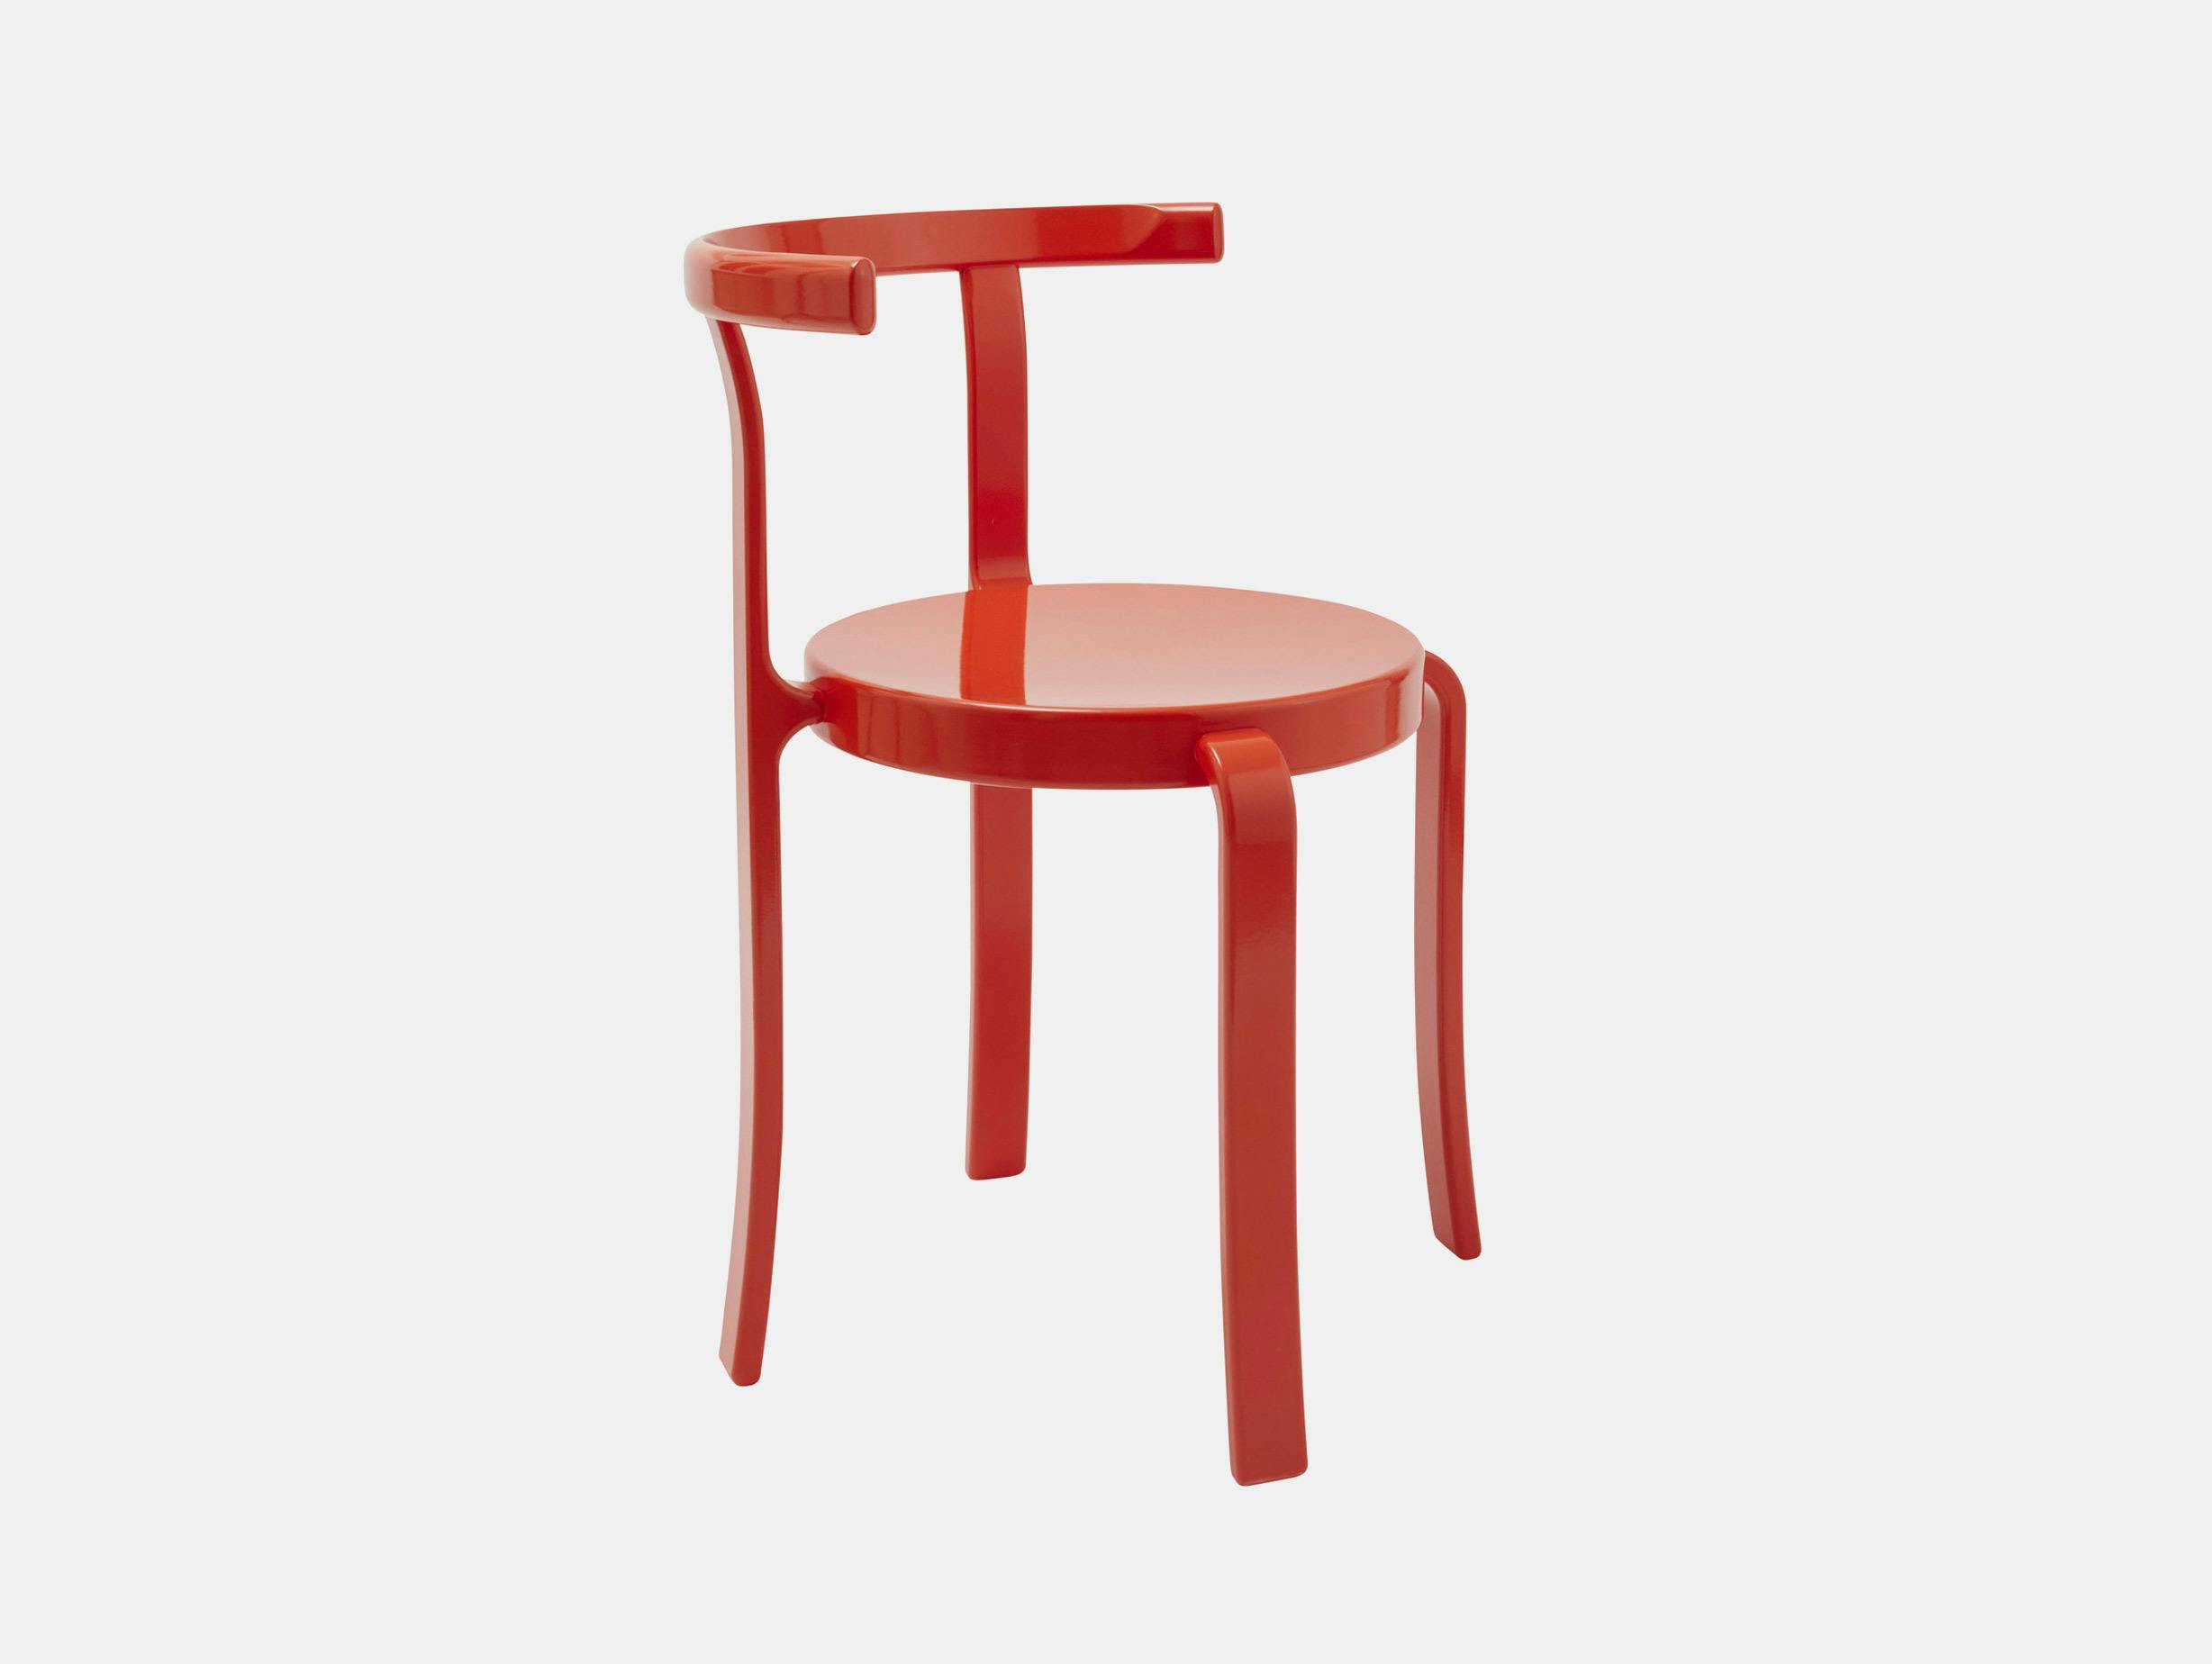 Magnus olesen rud thygesen johnny sorensen 8000 series chair retro red